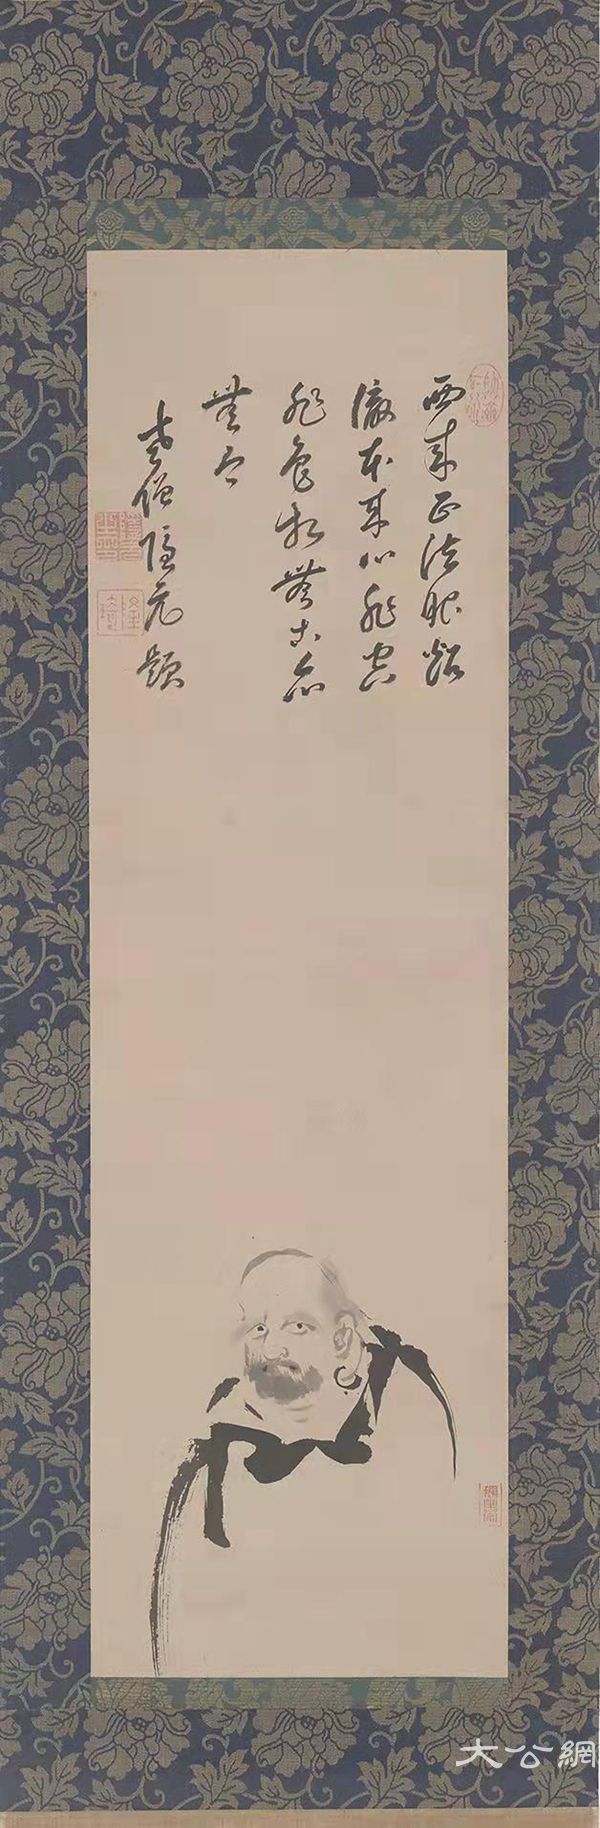 4.隐元隆琦达摩图，隐元隆琦（1592-1673），中国画，88x33cm，1664，杭州永福寺藏.jpg